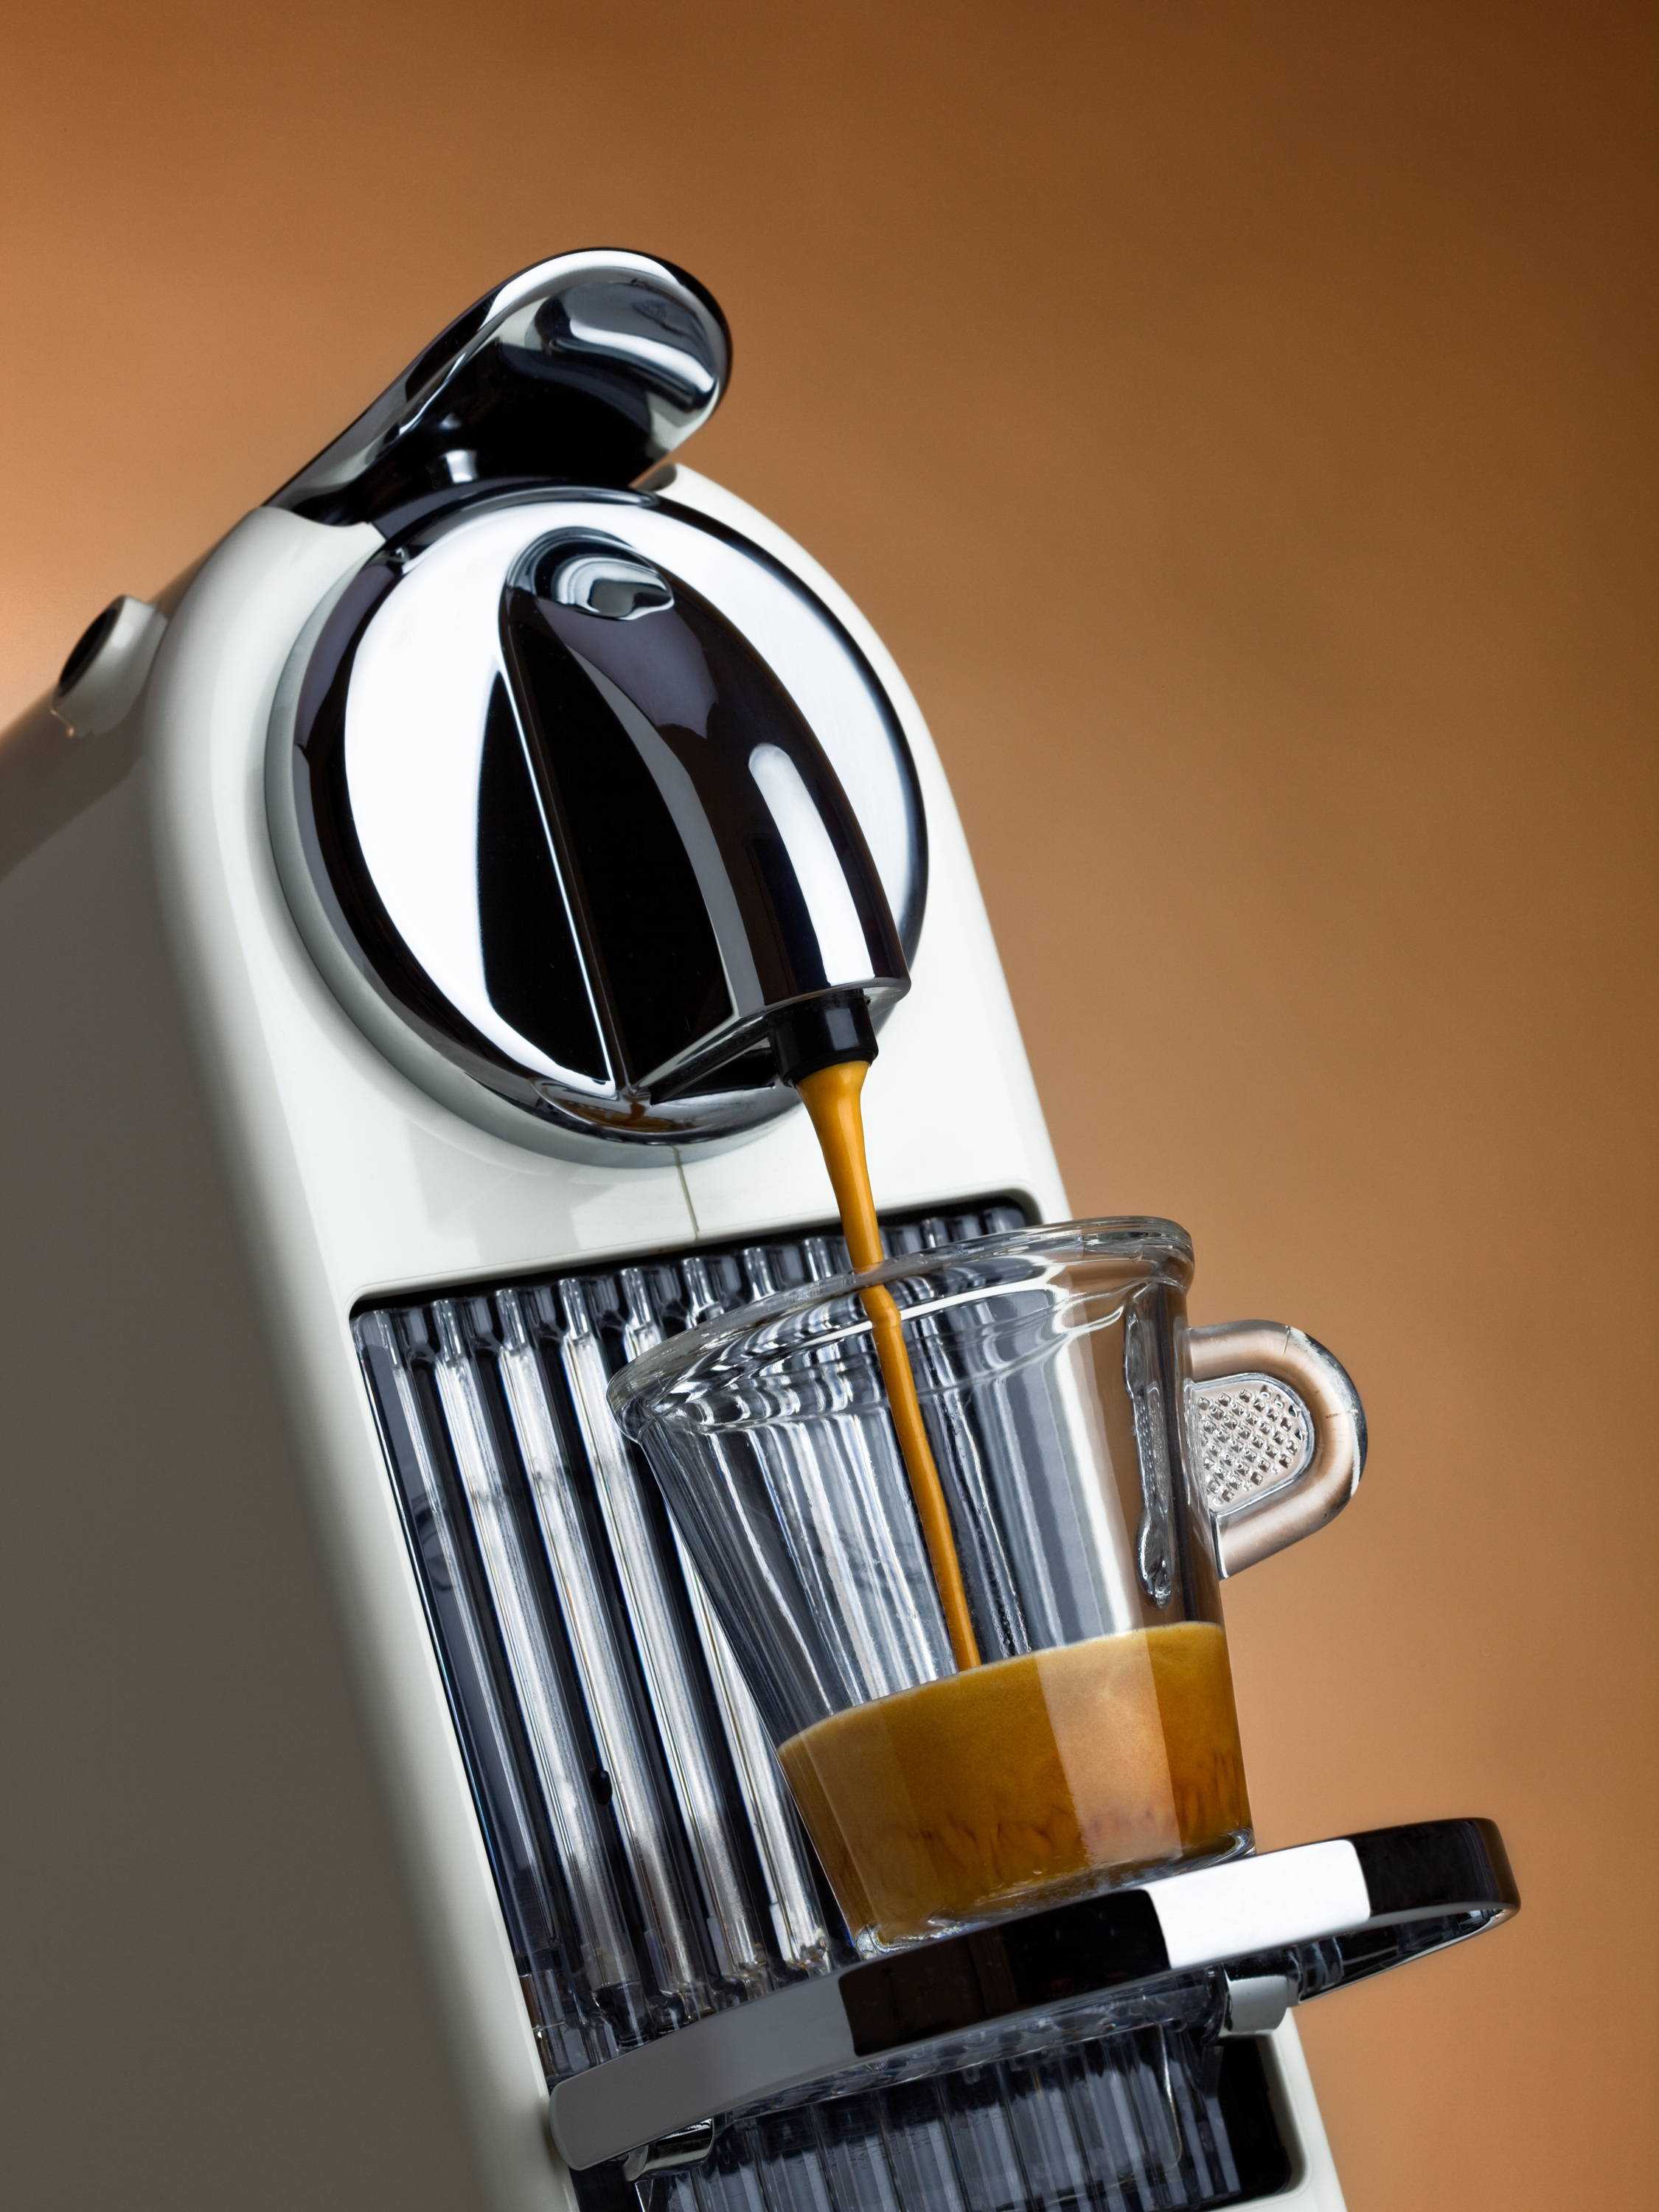 How to Reset Program a Nespresso Machine - Gourmesso Coffee